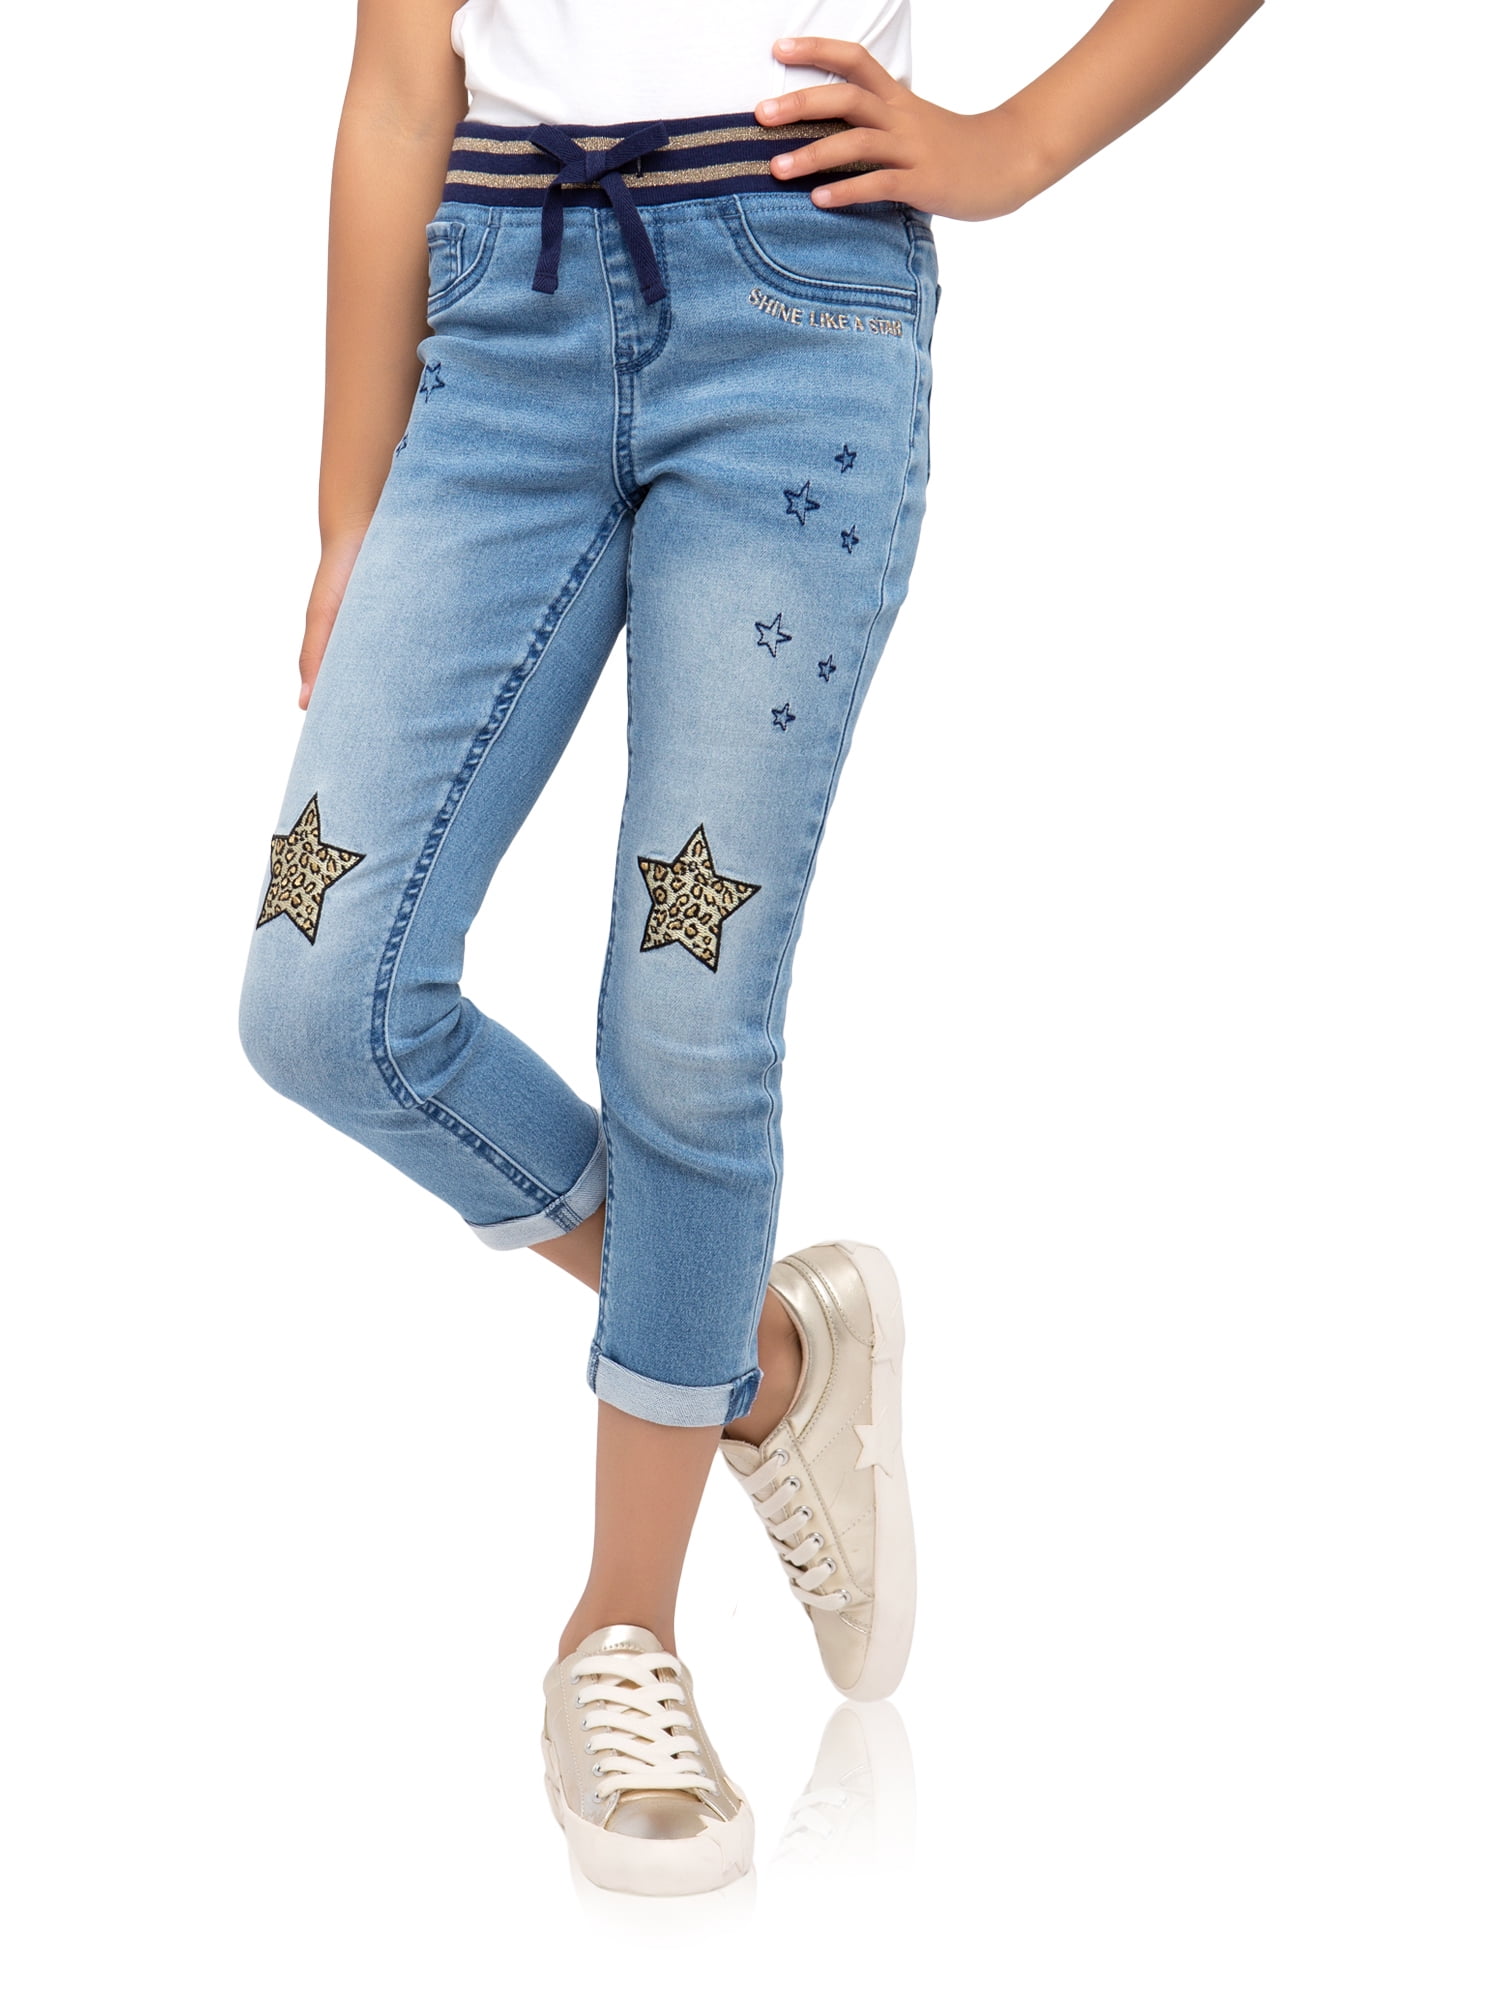 jeans capri for girl